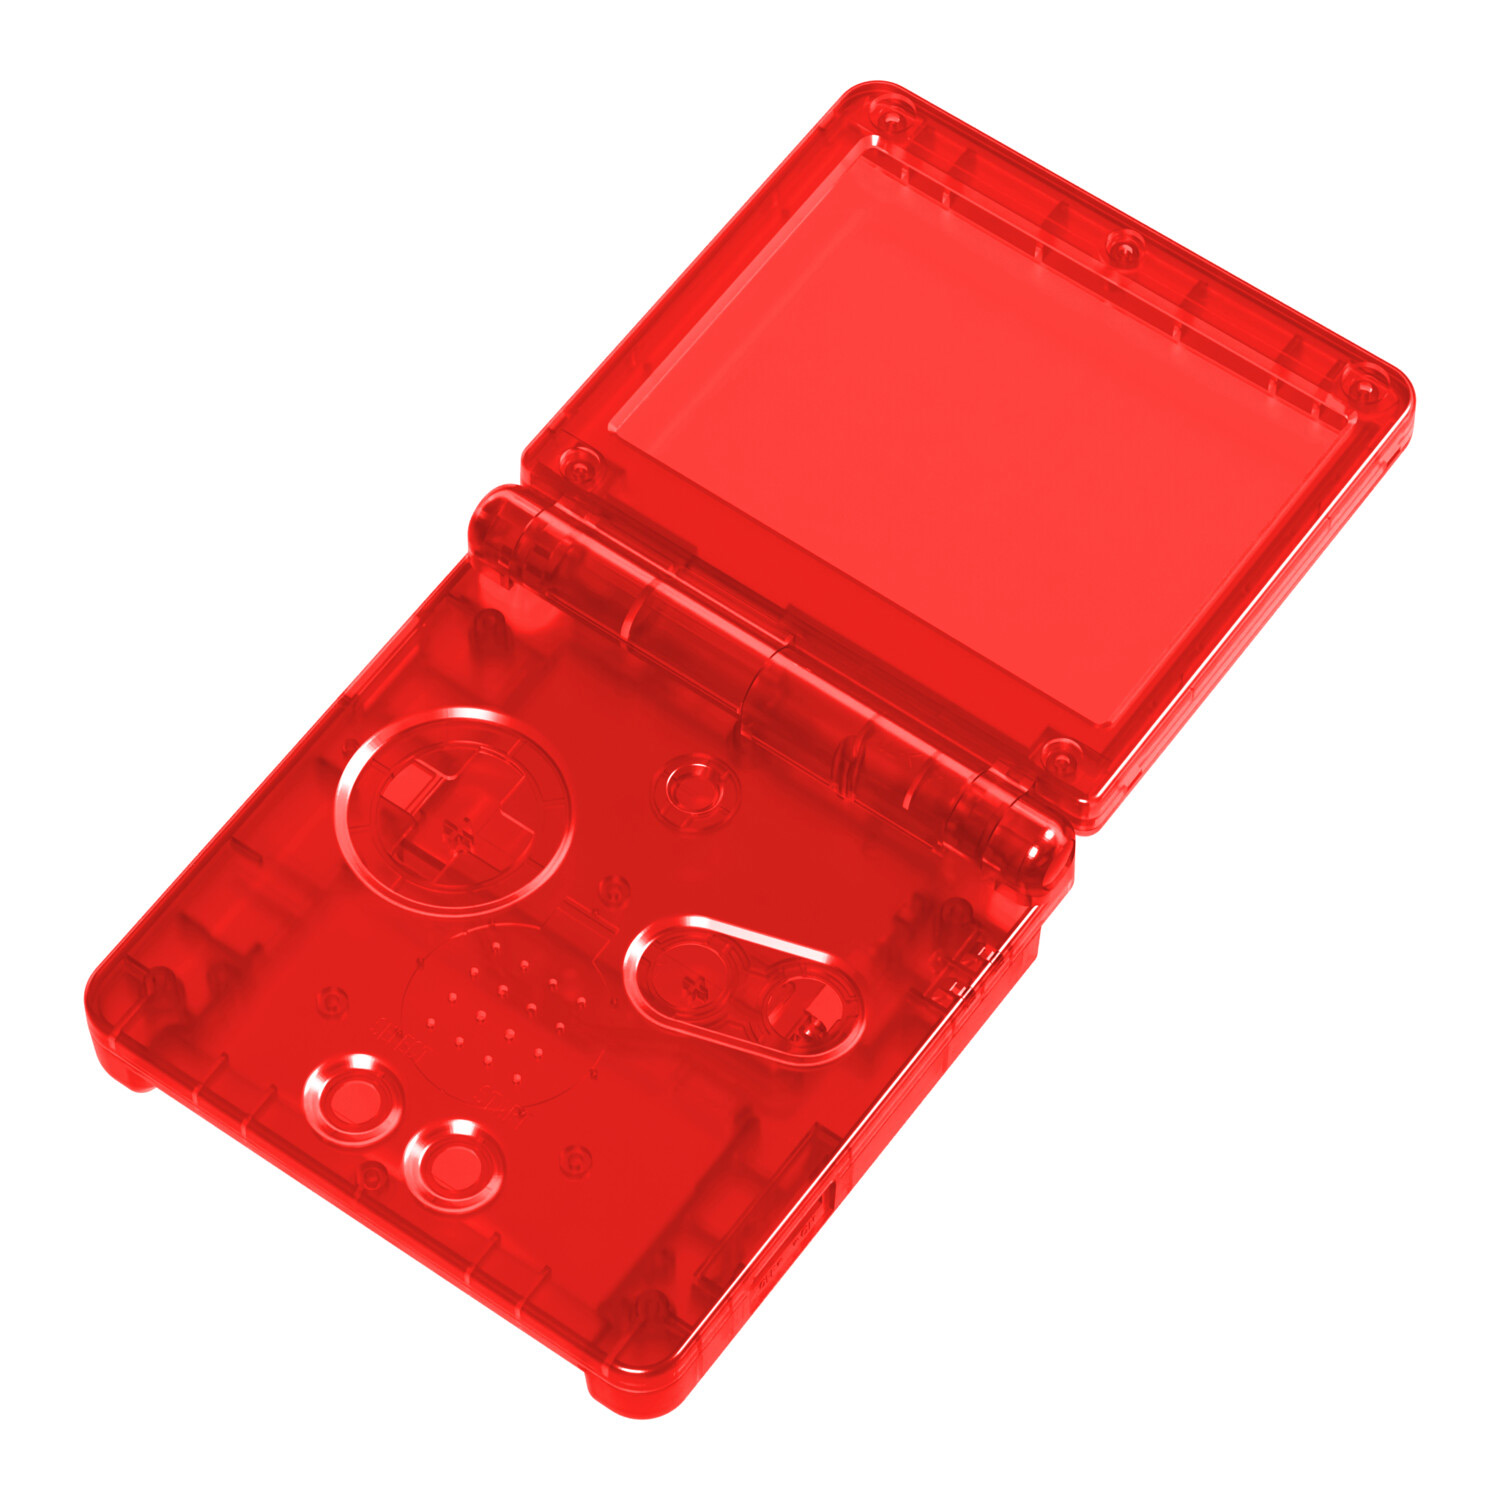 Gehäuse (Clear Red) für Game Boy Advance SP